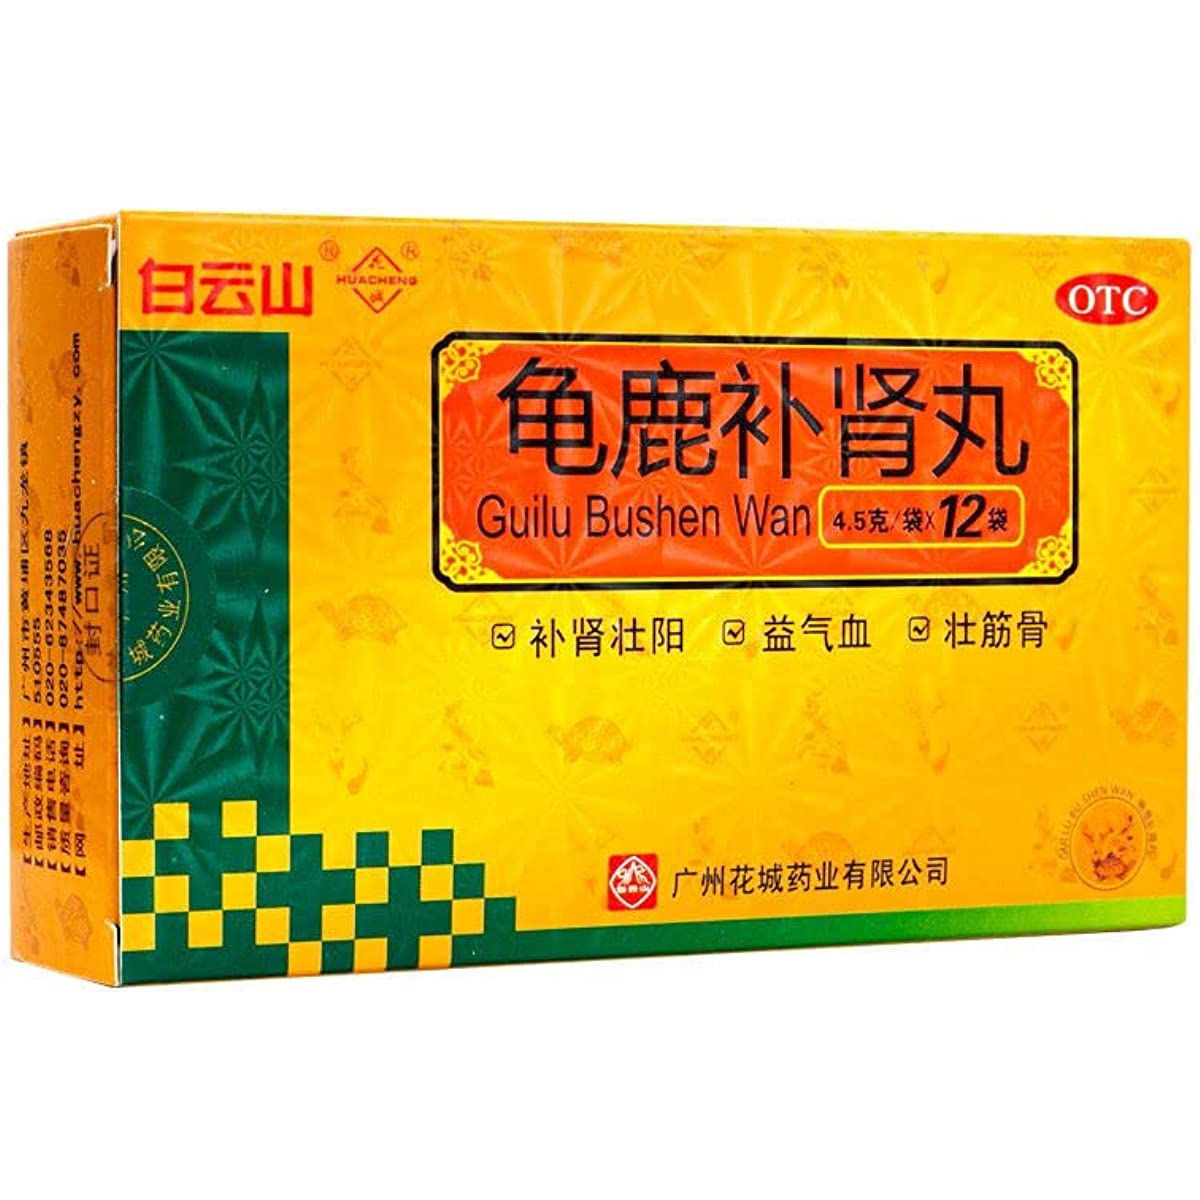 1 Box Guilu Bushen Wan 12 Bags / Box  龟鹿补肾丸